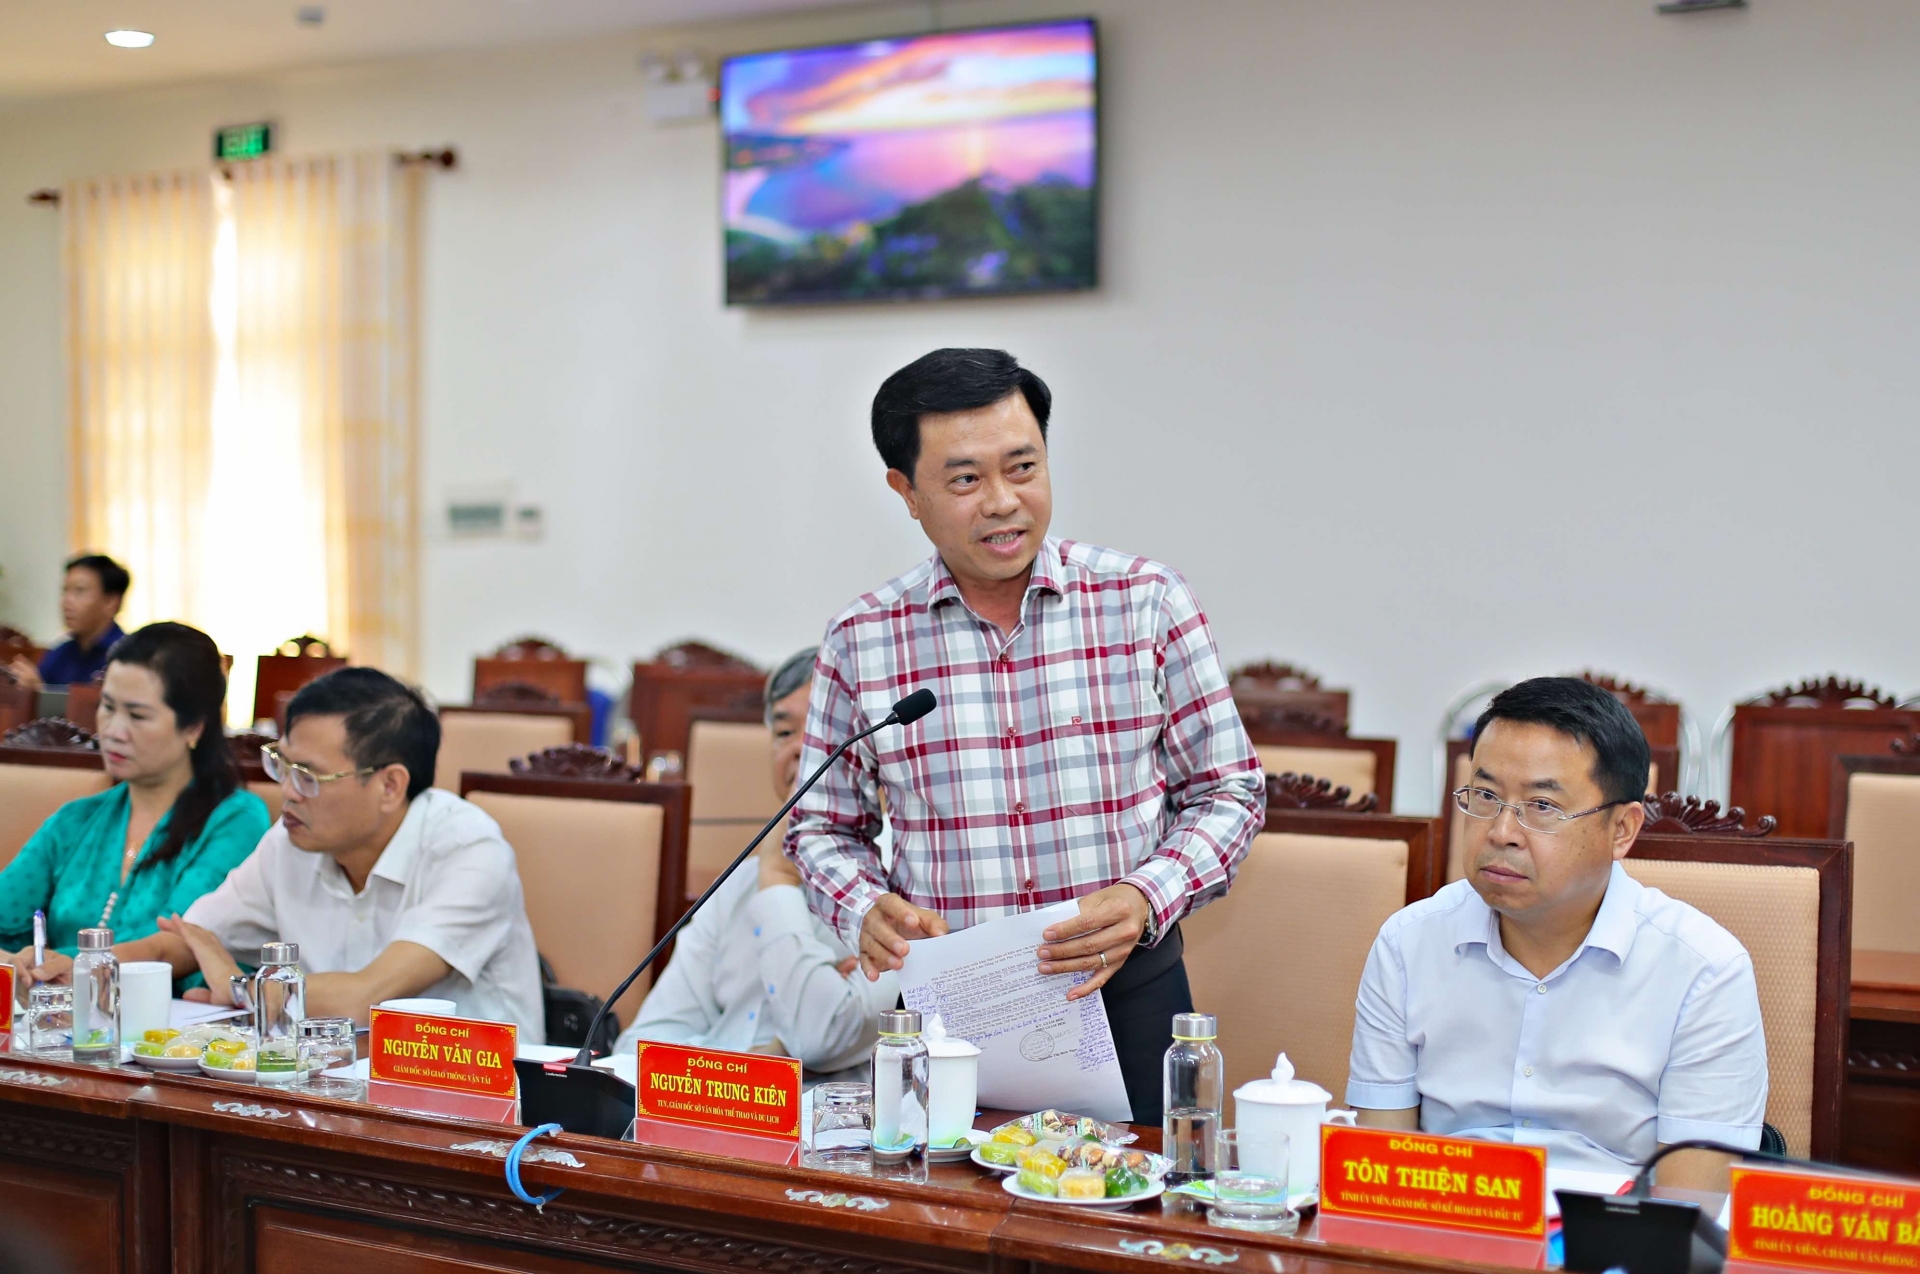 Đồng chí Nguyễn Trung Kiên, Giám đốc Sở Văn hoá Thể thao tỉnh Lâm Đồng đánh giá việc hợp tác trong lĩnh vực văn hoá của hai địa phương 